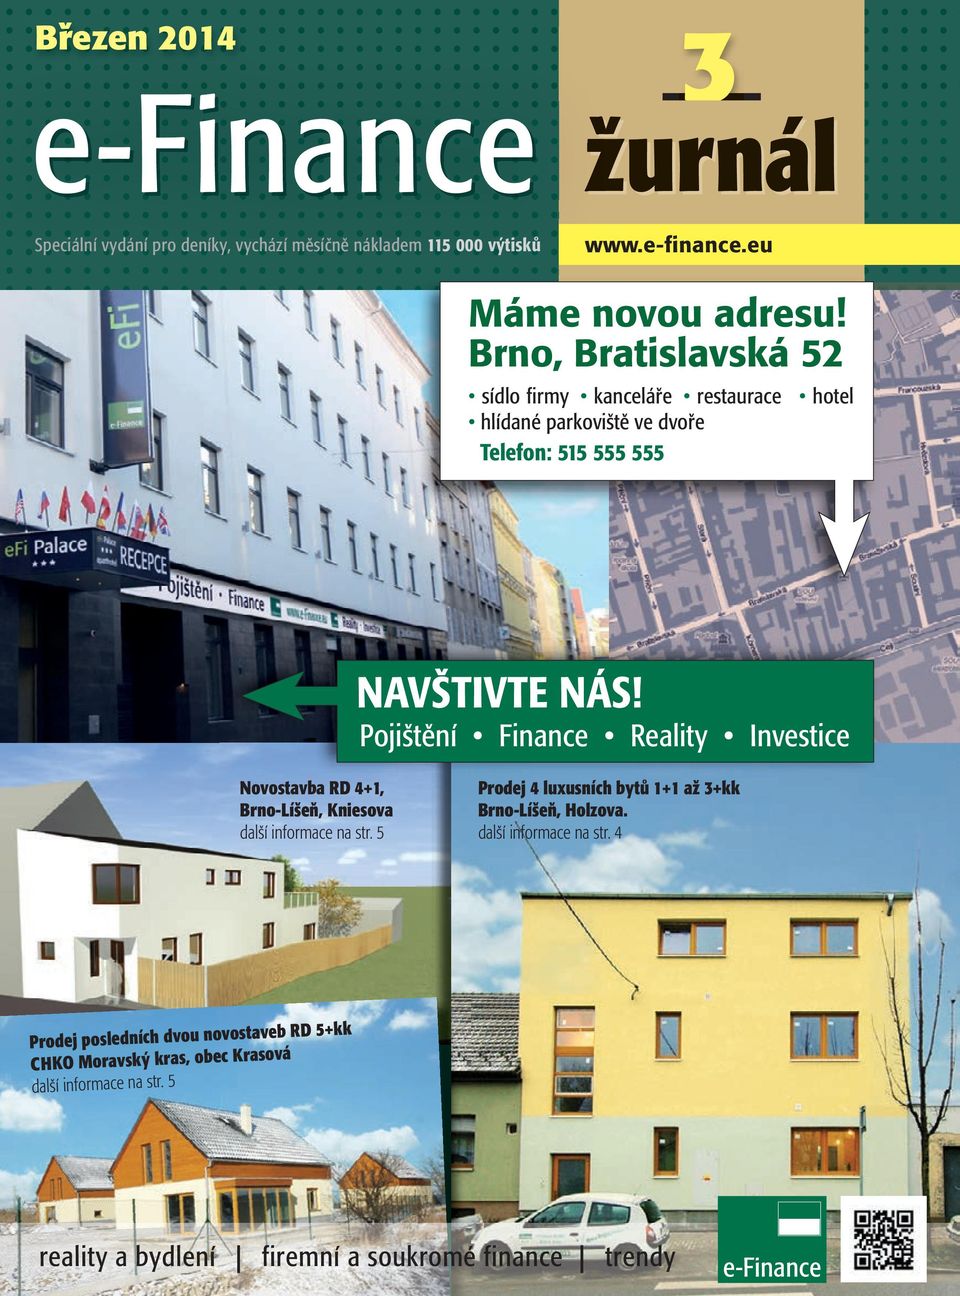 Pojištění Finance Reality Investice Novostavba RD 4+1, Brno-Líšeň, Kniesova další informace na str.